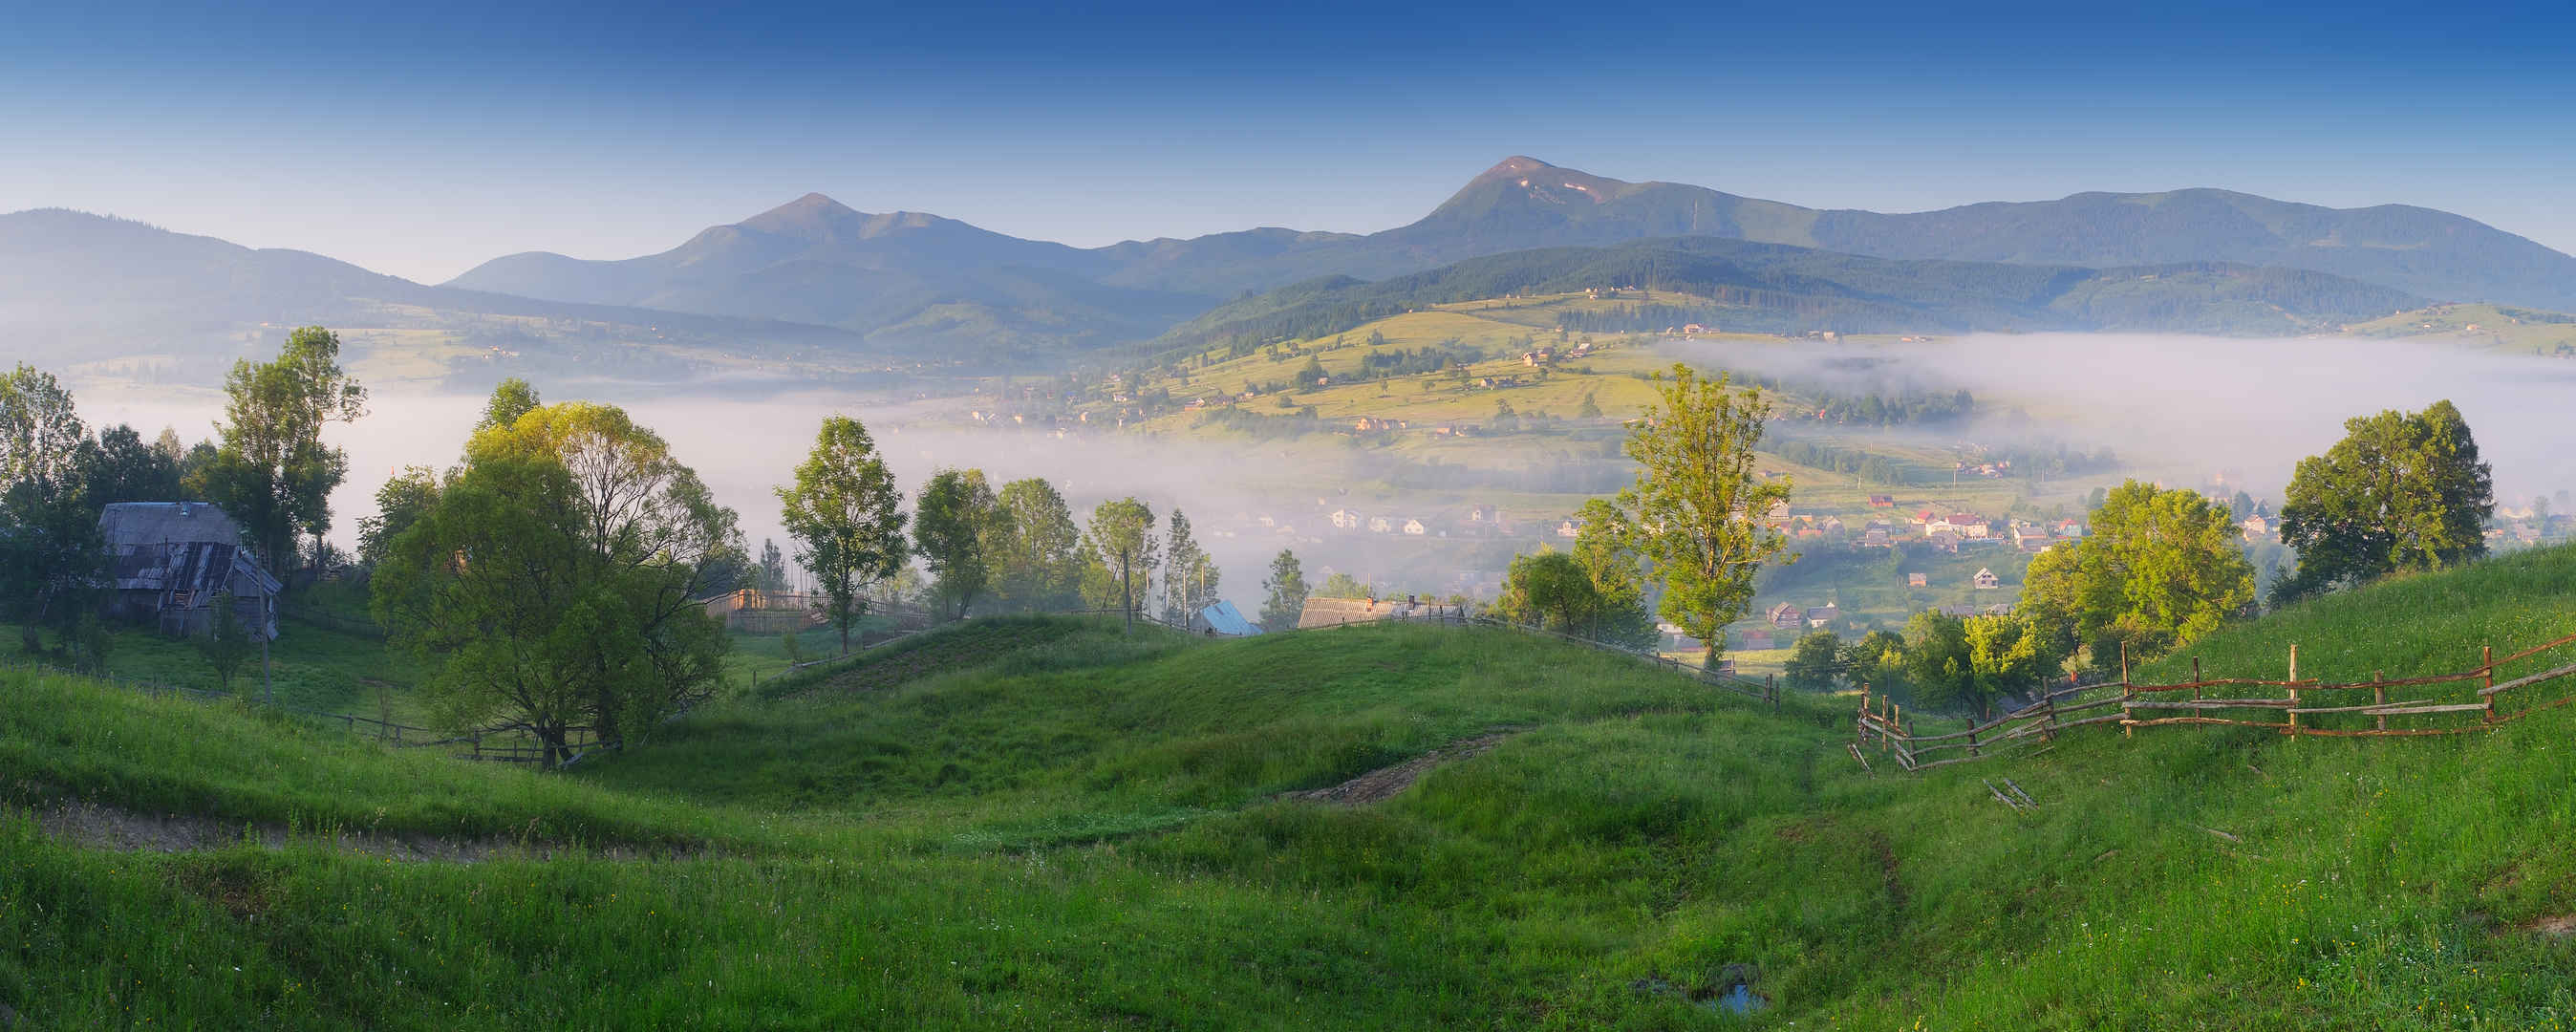 欧洲乌克兰喀尔巴阡山脉早晨风景图-